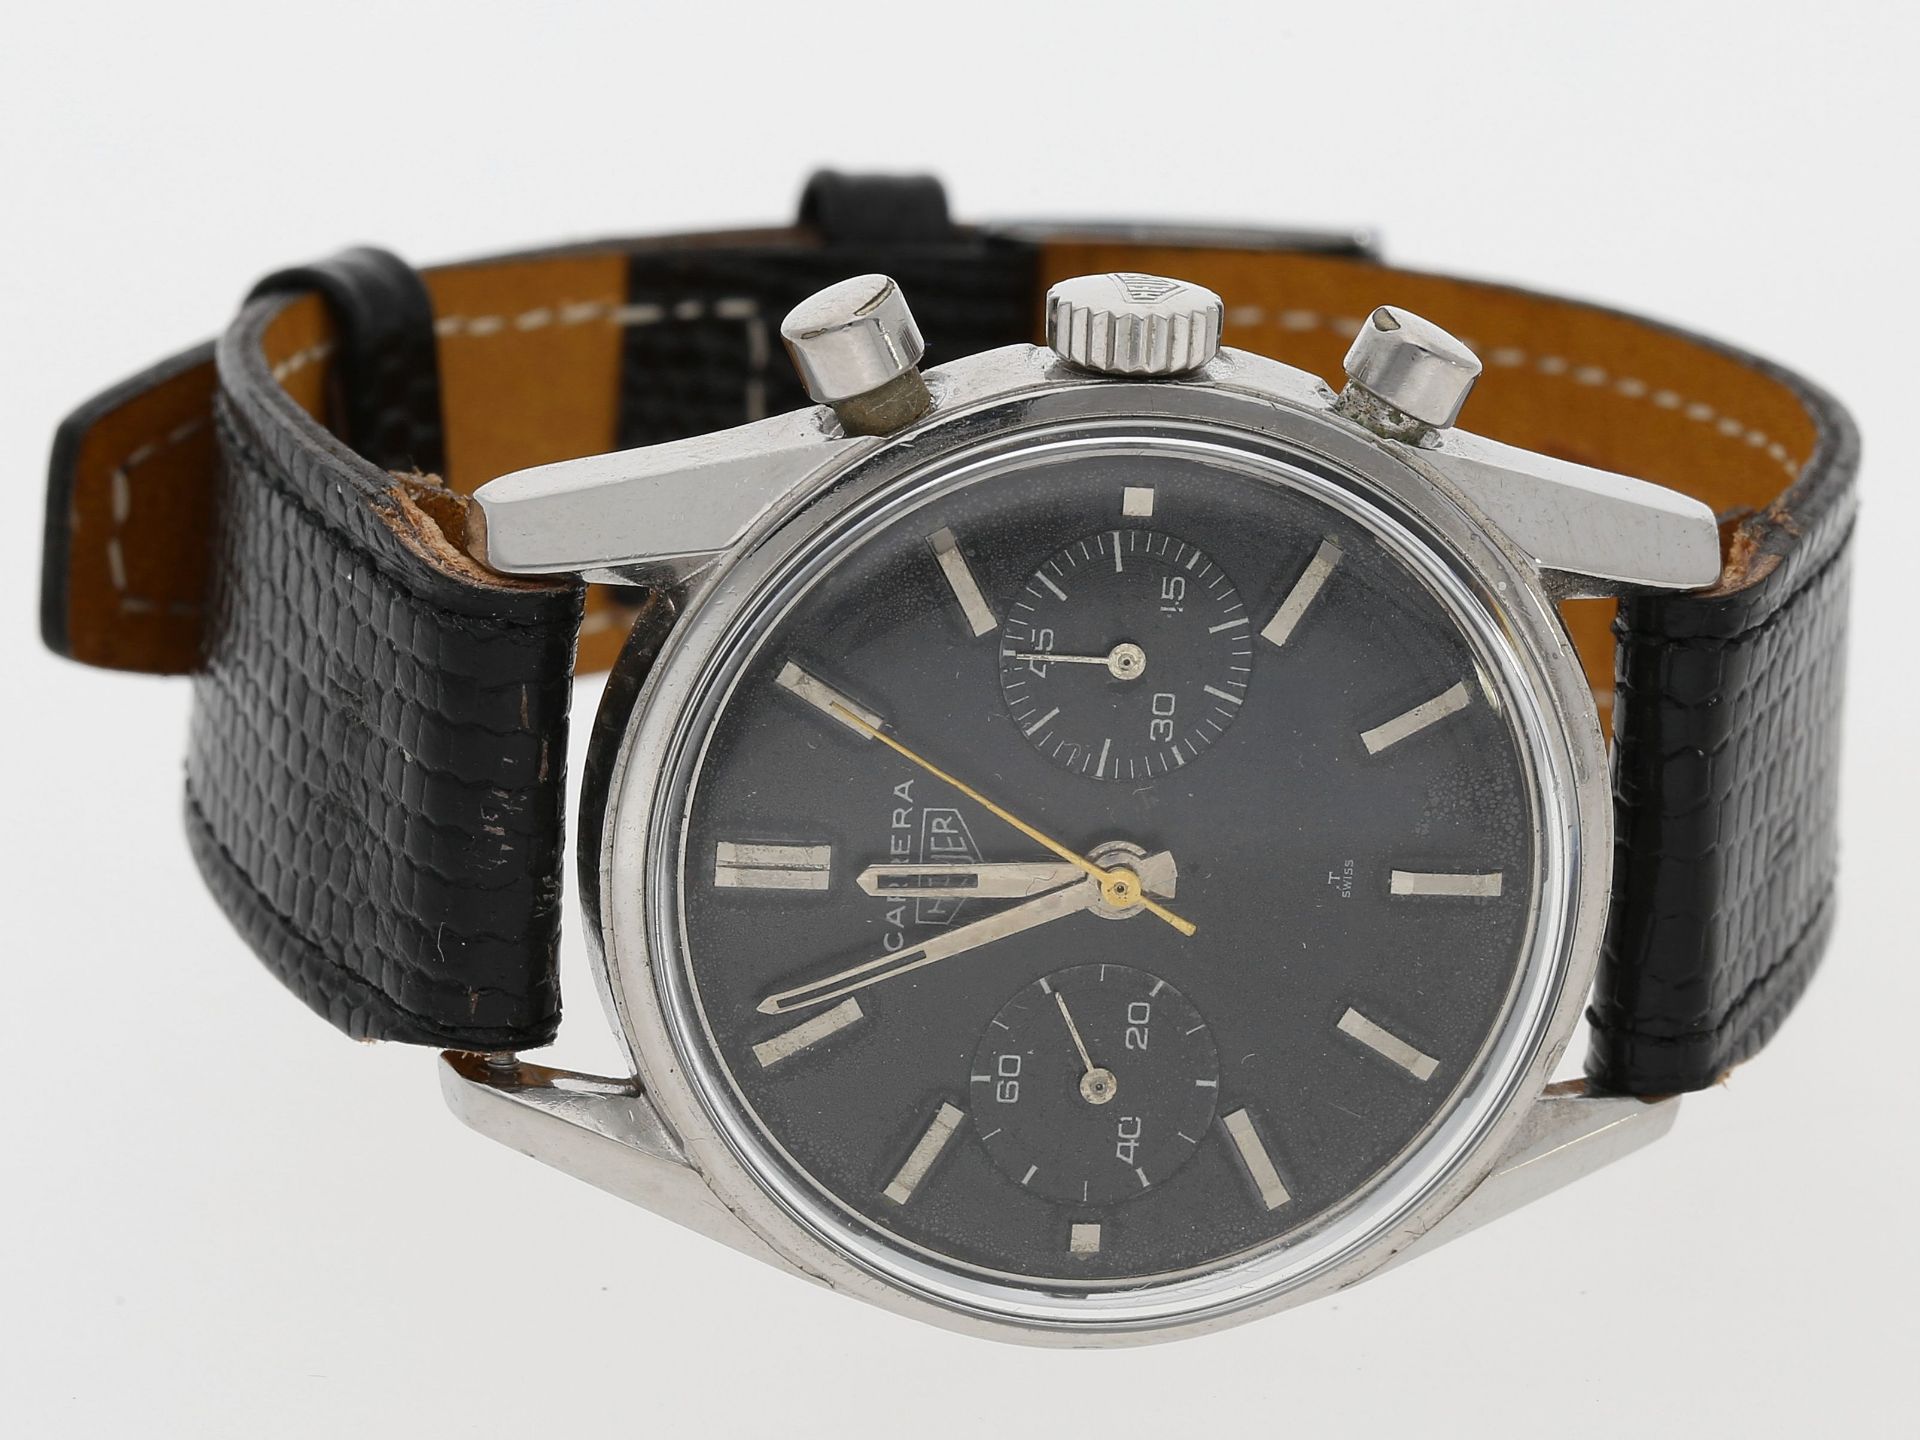 Armbanduhr: sehr seltener Heuer Carrera Chronograph mit schwarzem Tritium-Blatt, ca.1965